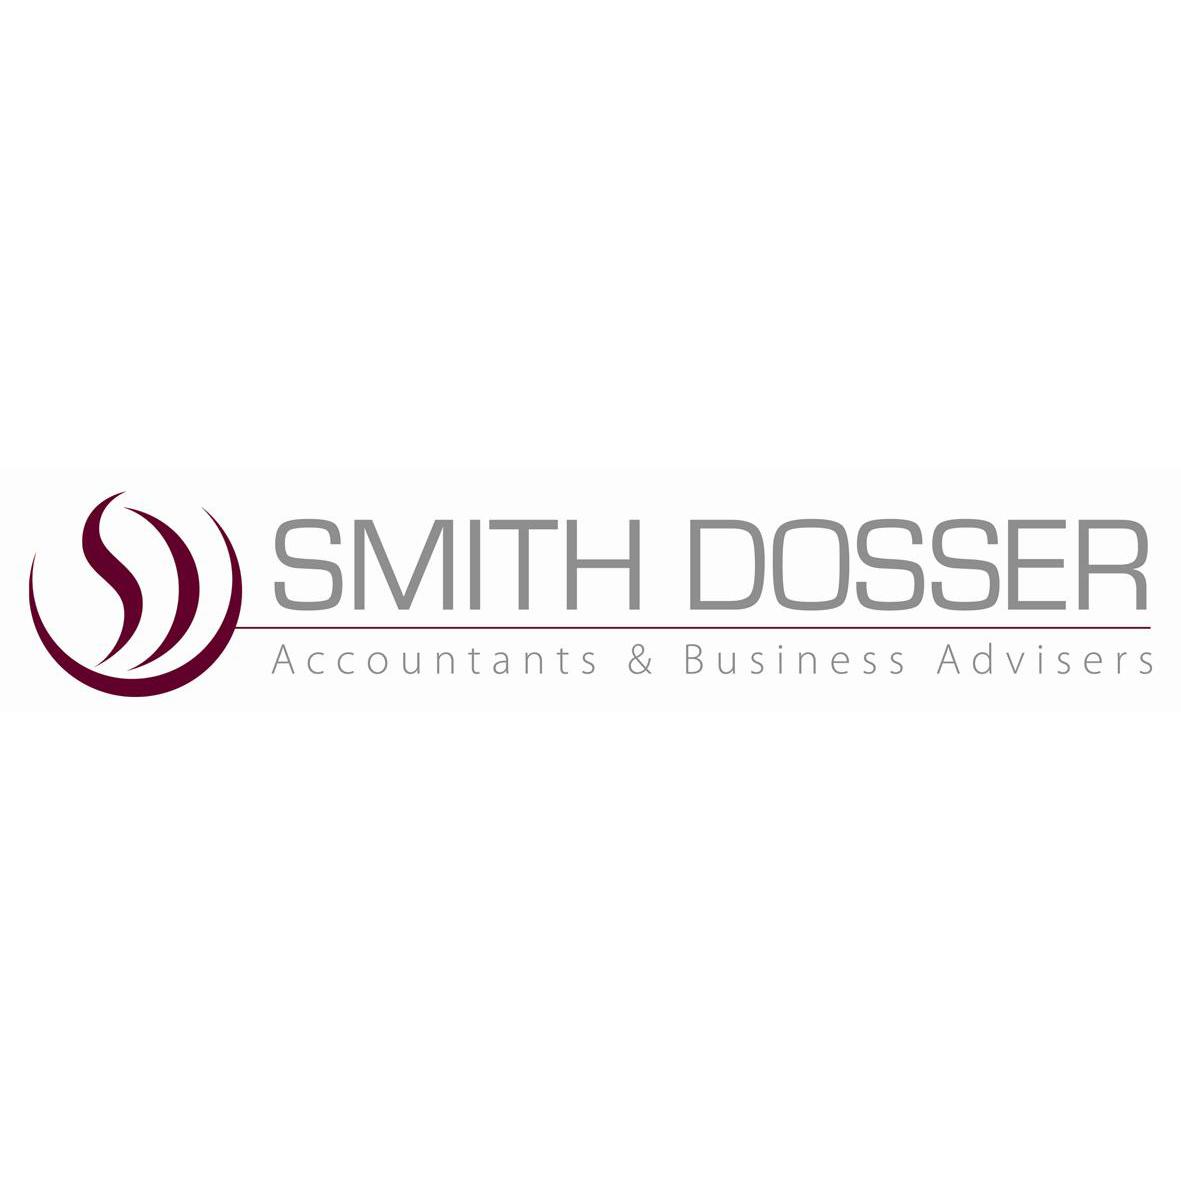 Smith Dosser Benalla (03) 5762 1588